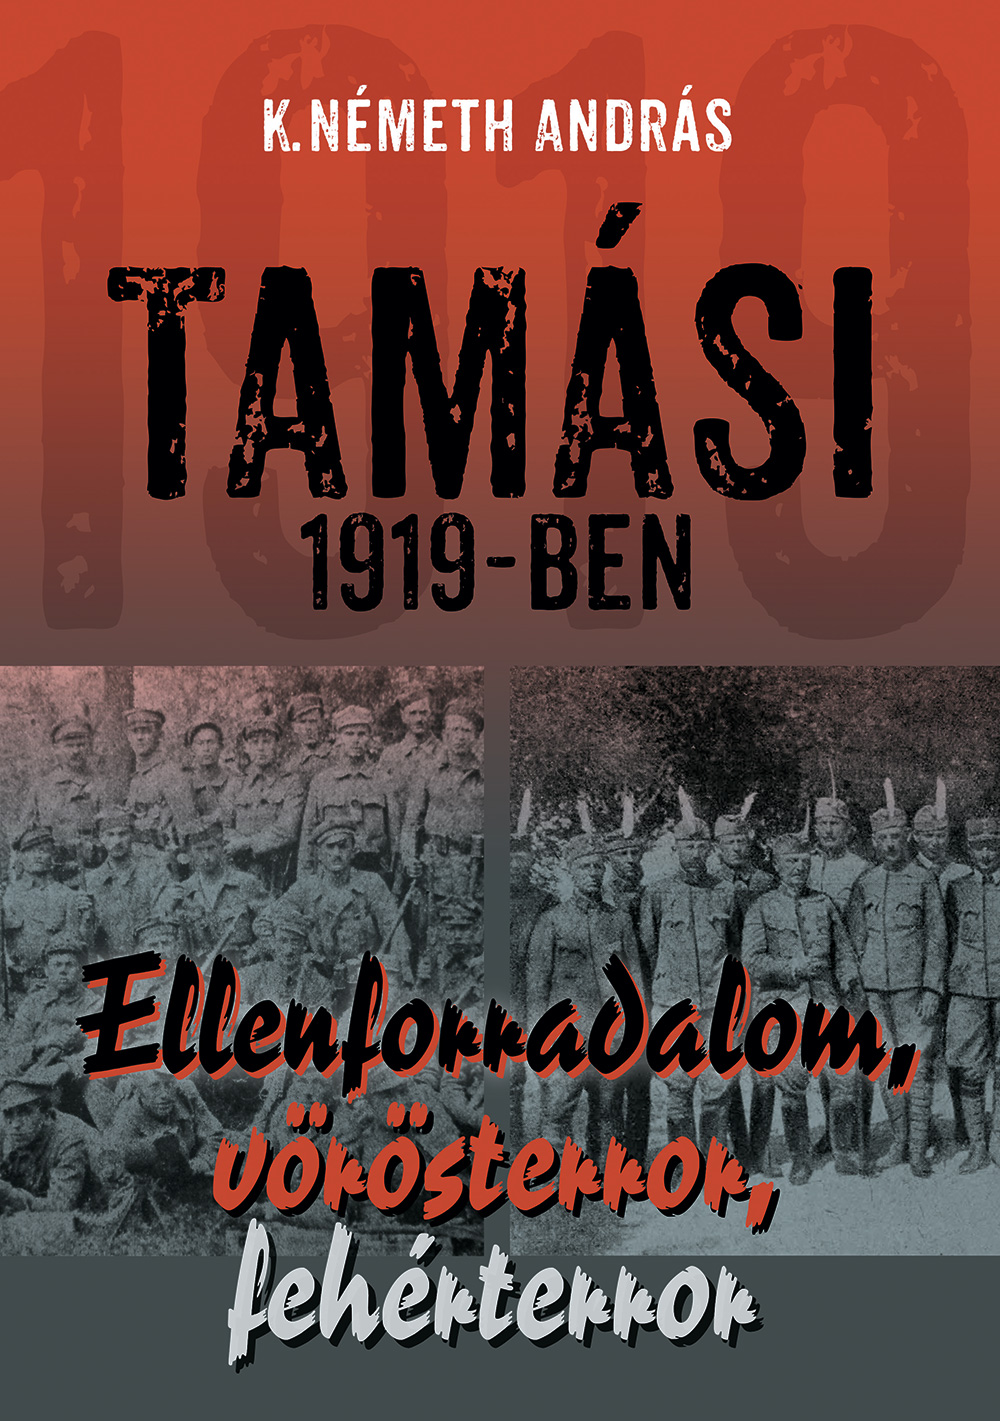 K. Németh András Tamási 1919-ben című kötetének borítója